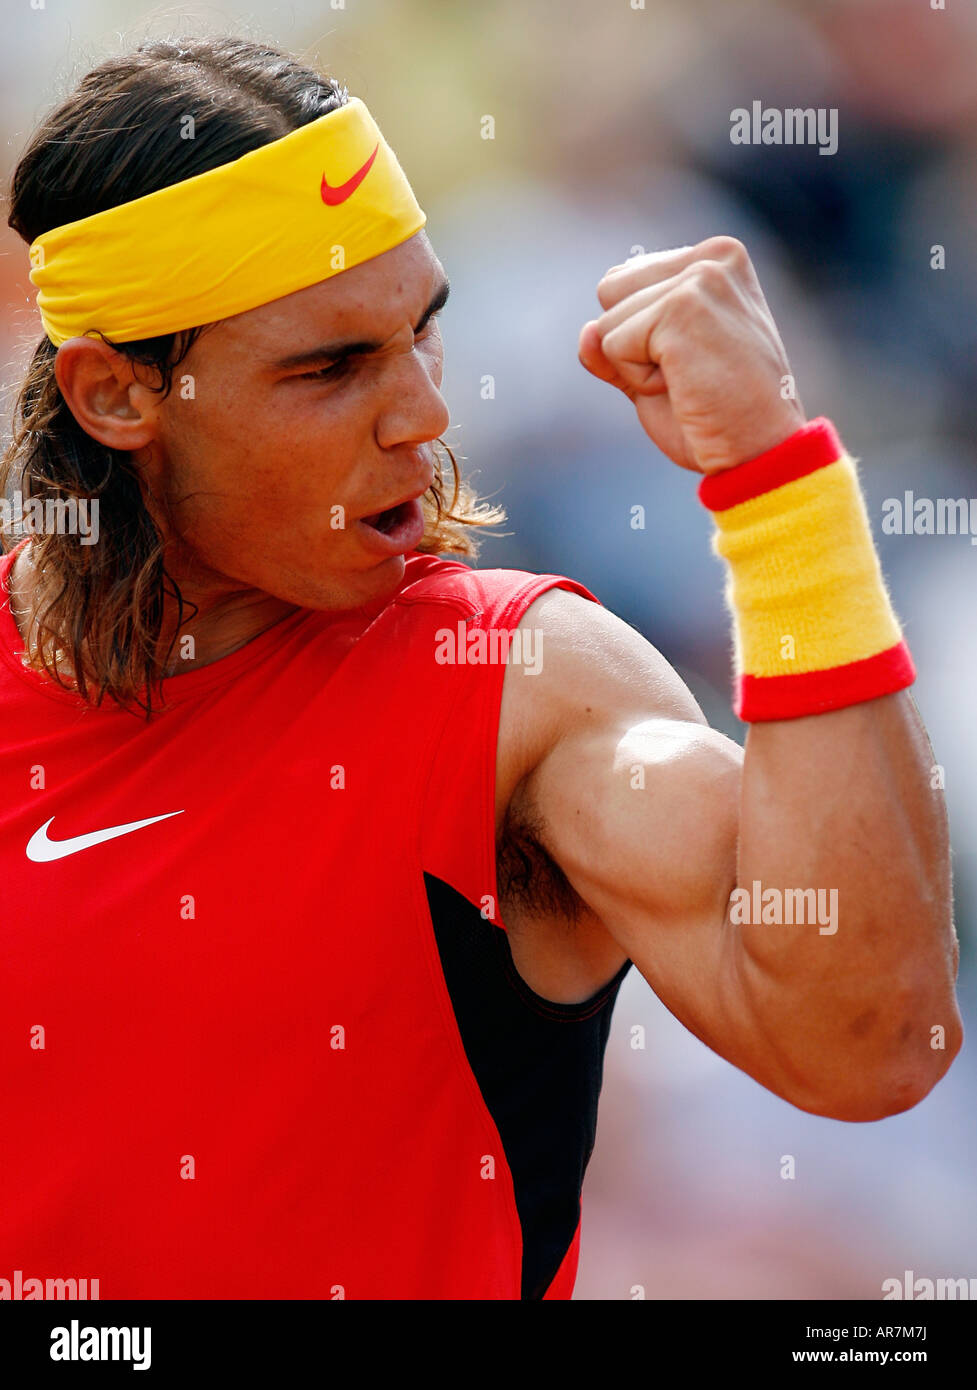 El tenista español Rafael Nadal celebra un punto durante la Copa Davis play off contra Italia en Santander Foto de stock